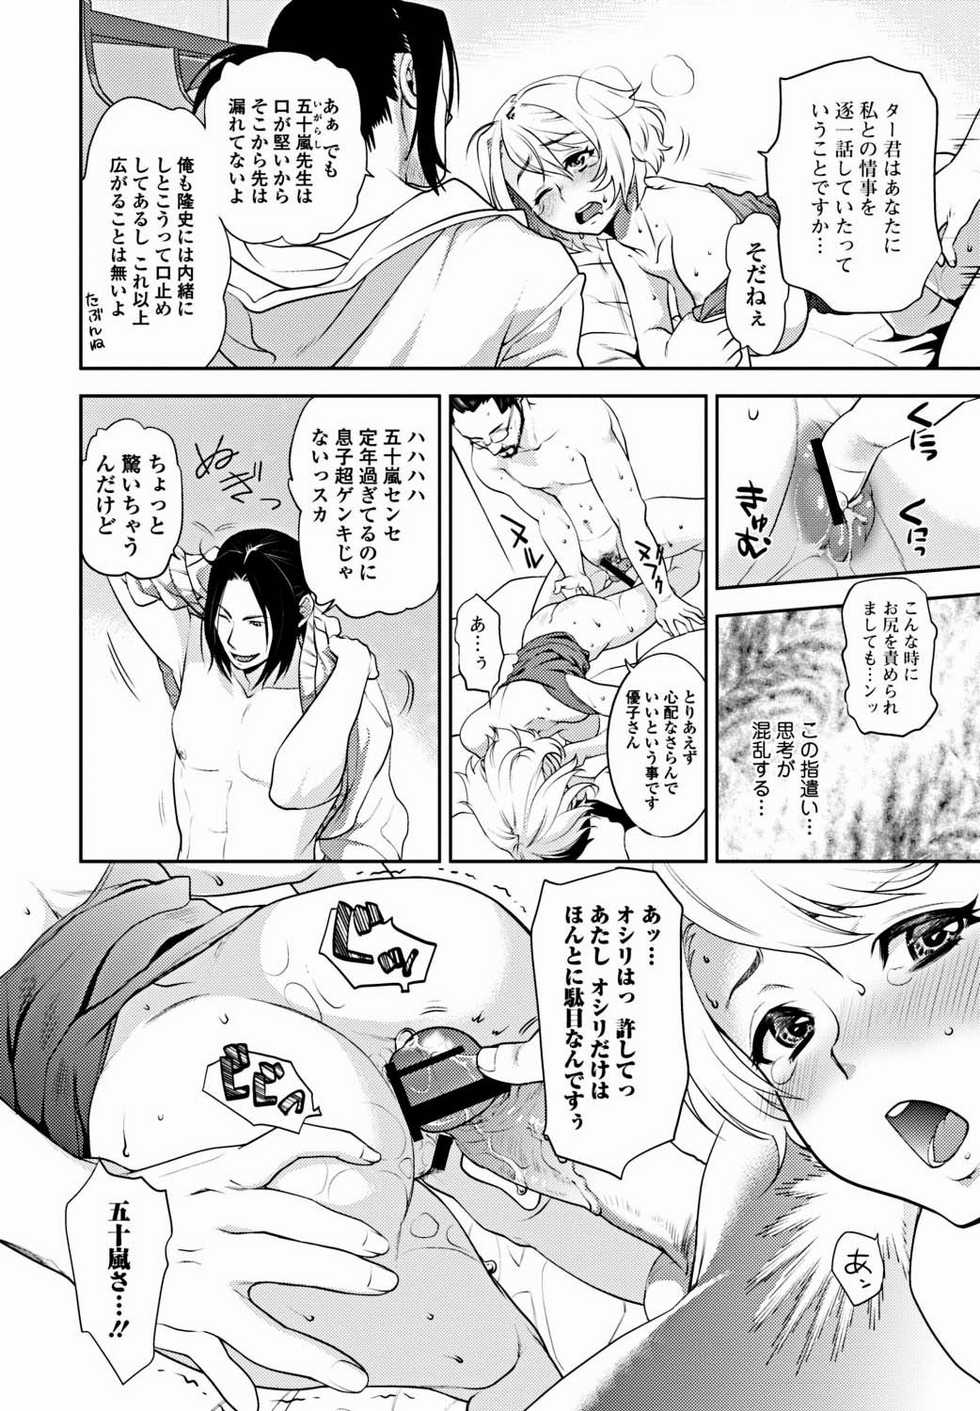 Bishoujo Kakumei KIWAME 2012-02 Vol. 18 [Digital] - Page 33